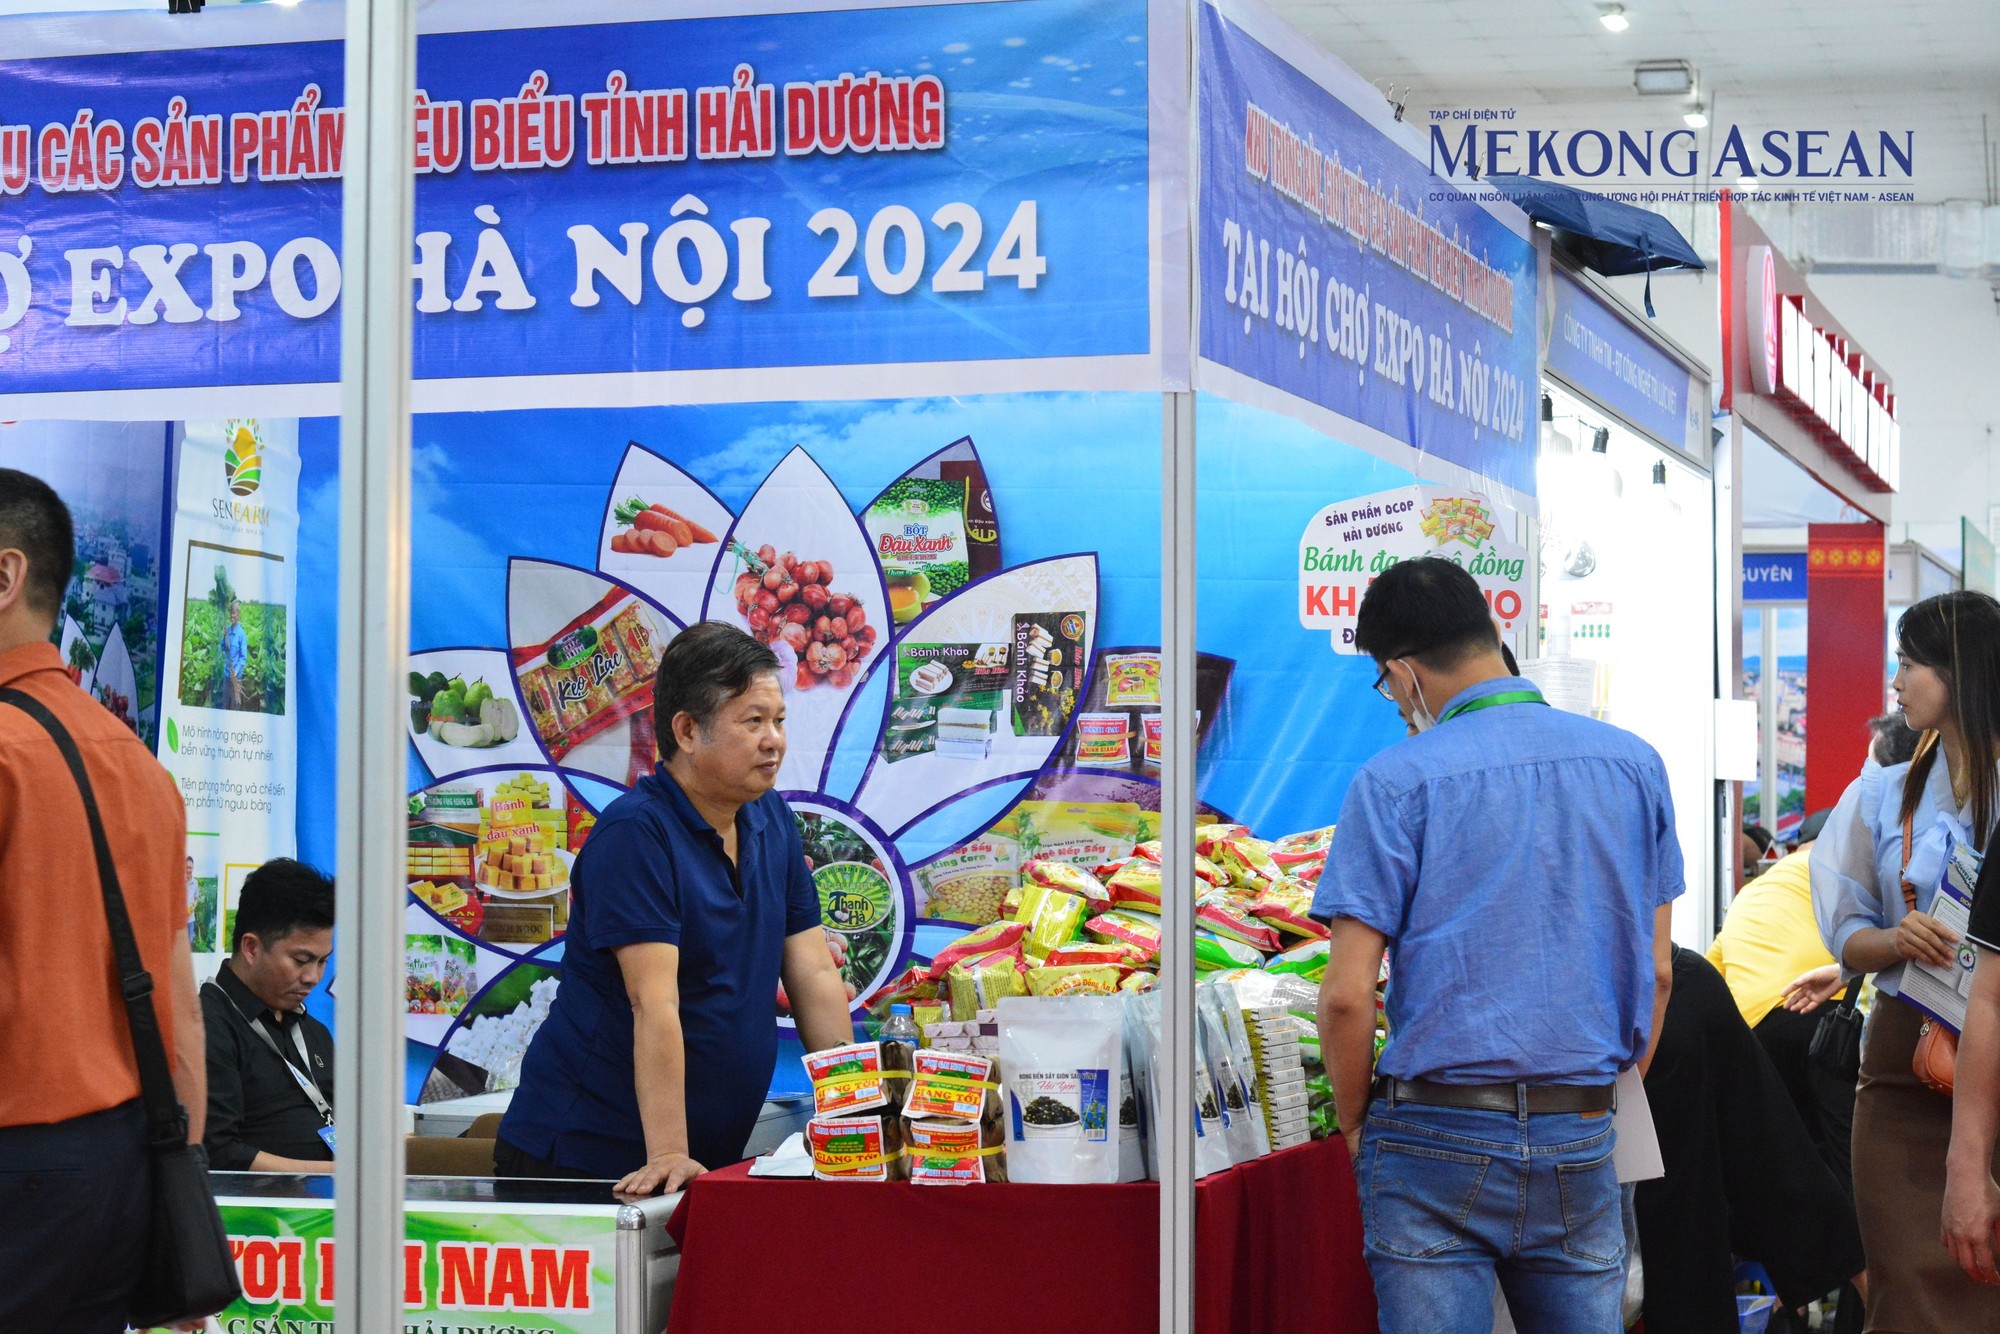 Tỉnh Hải Dương đem đến hội chợ c&aacute;c sản phẩm nổi tiếng của địa phương như b&aacute;nh đậu, b&aacute;nh đa, b&aacute;nh gai, tr&agrave;... Ảnh: L&ecirc; Hồng Nhung - Mekong ASEAN